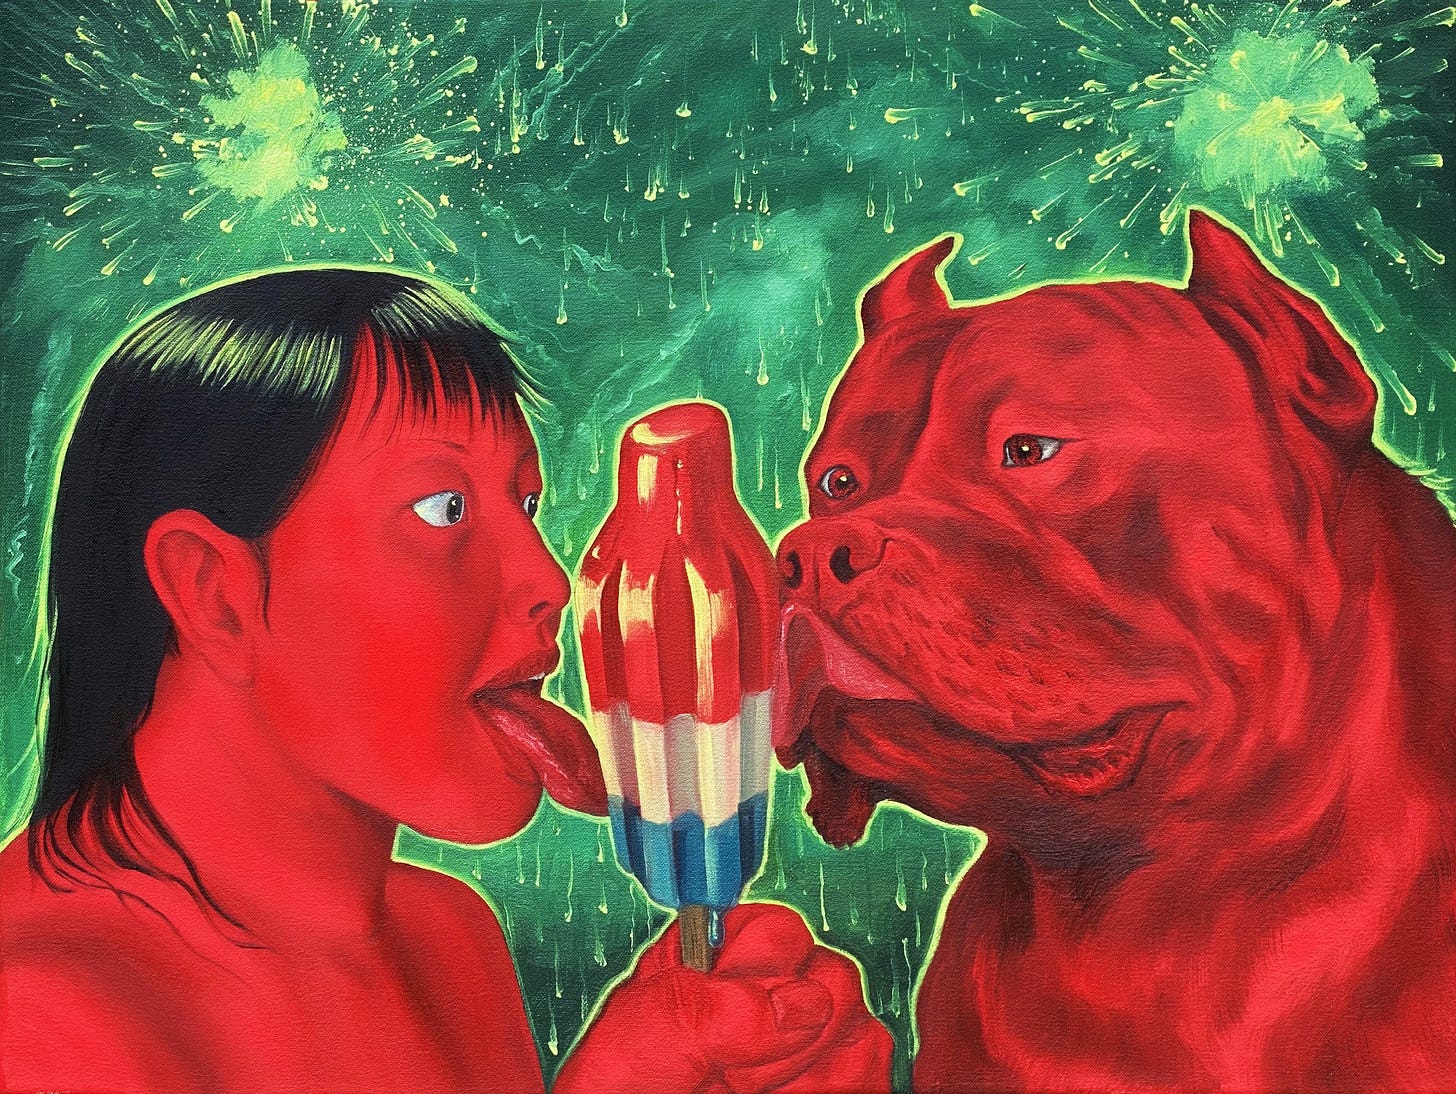 Pintura onde se vê uma mulher e um buldogue, ambos vermelhos, lambendo o mesmo picolé com as cores dos Estados Unidos. Ao fundo, fogos de artíficios explodem em um céu verde neon